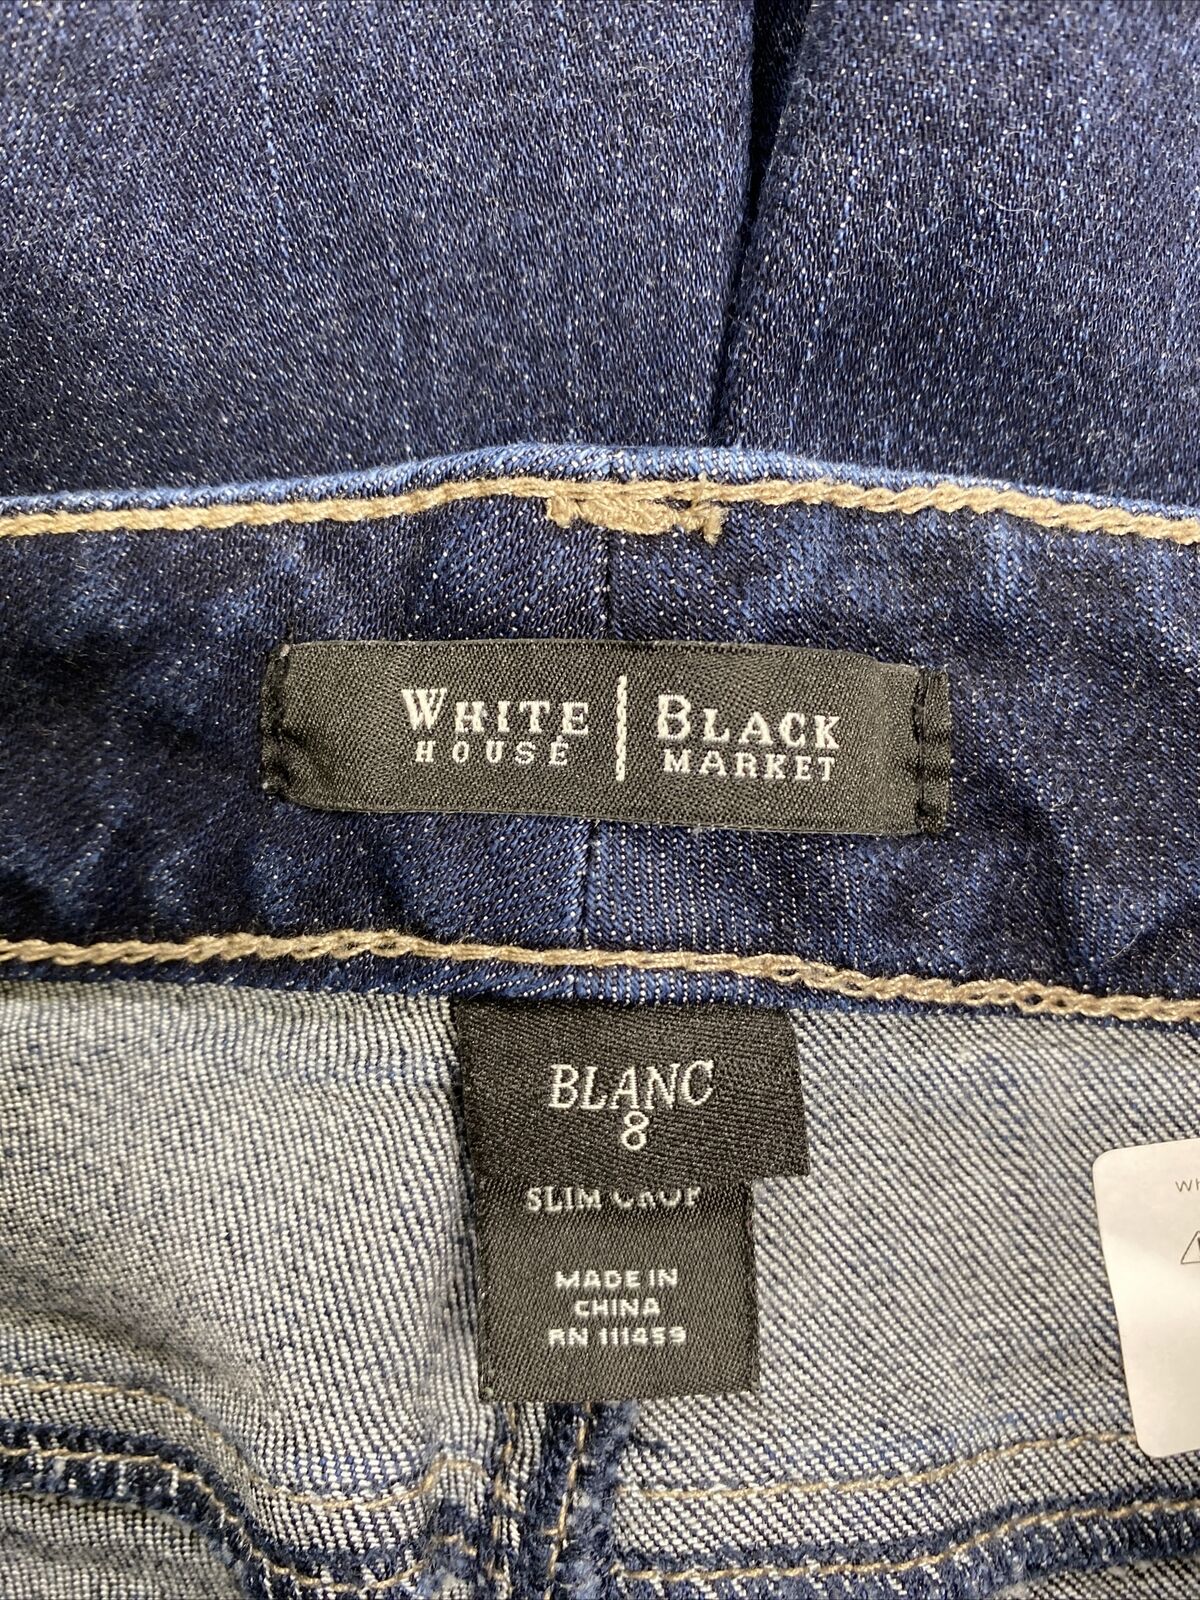 White House Black Market Women's Dark Wash Slim Crop Denim Jeans Sz 8